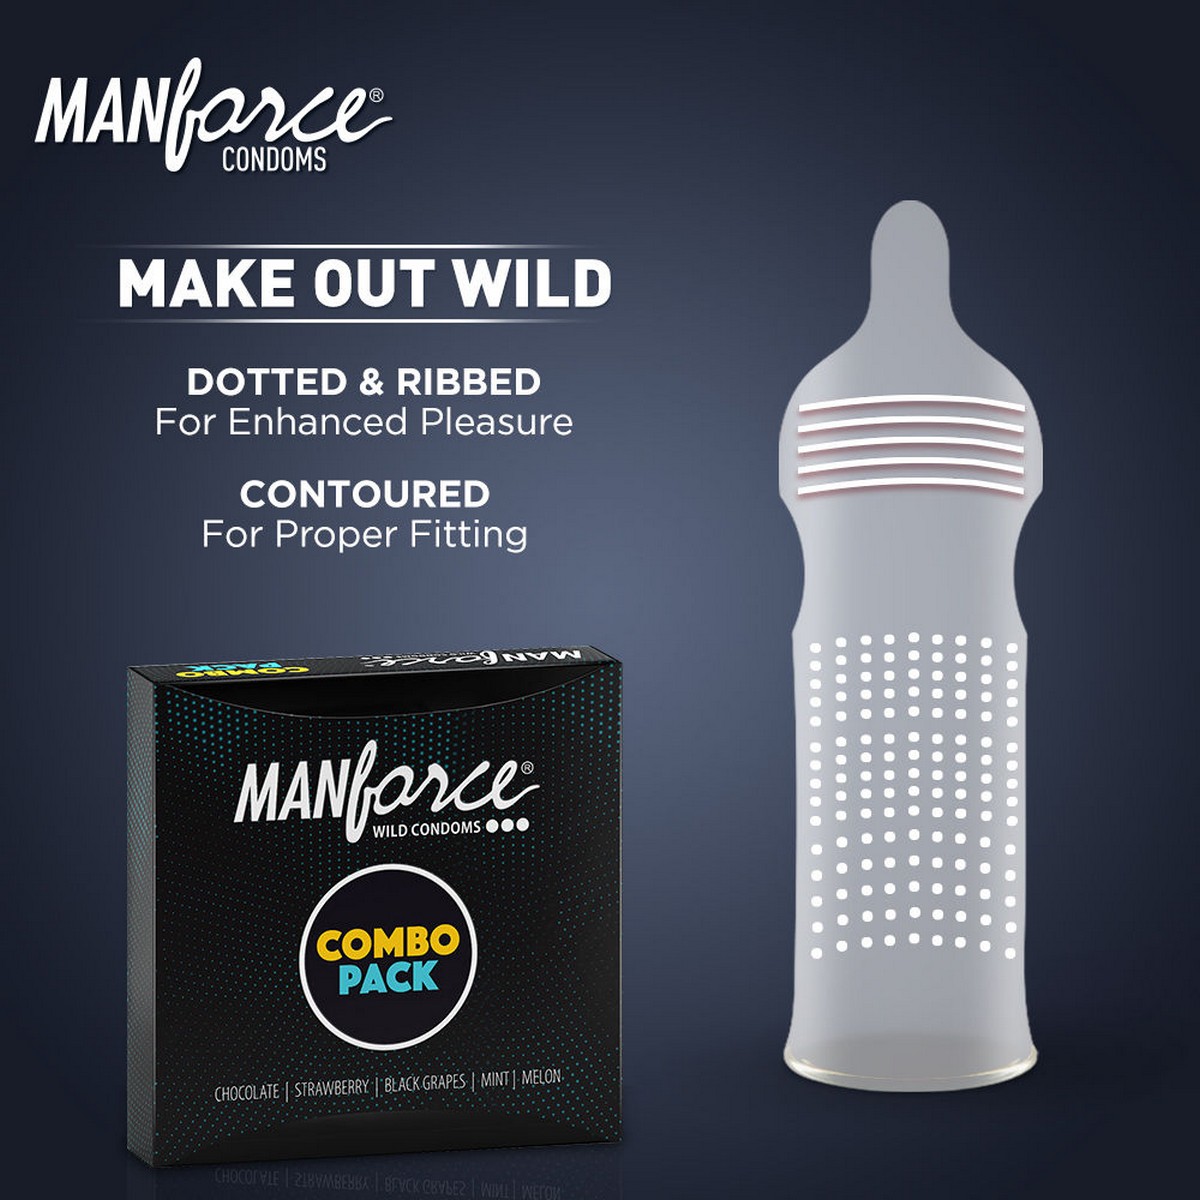 Manforce condoms 3